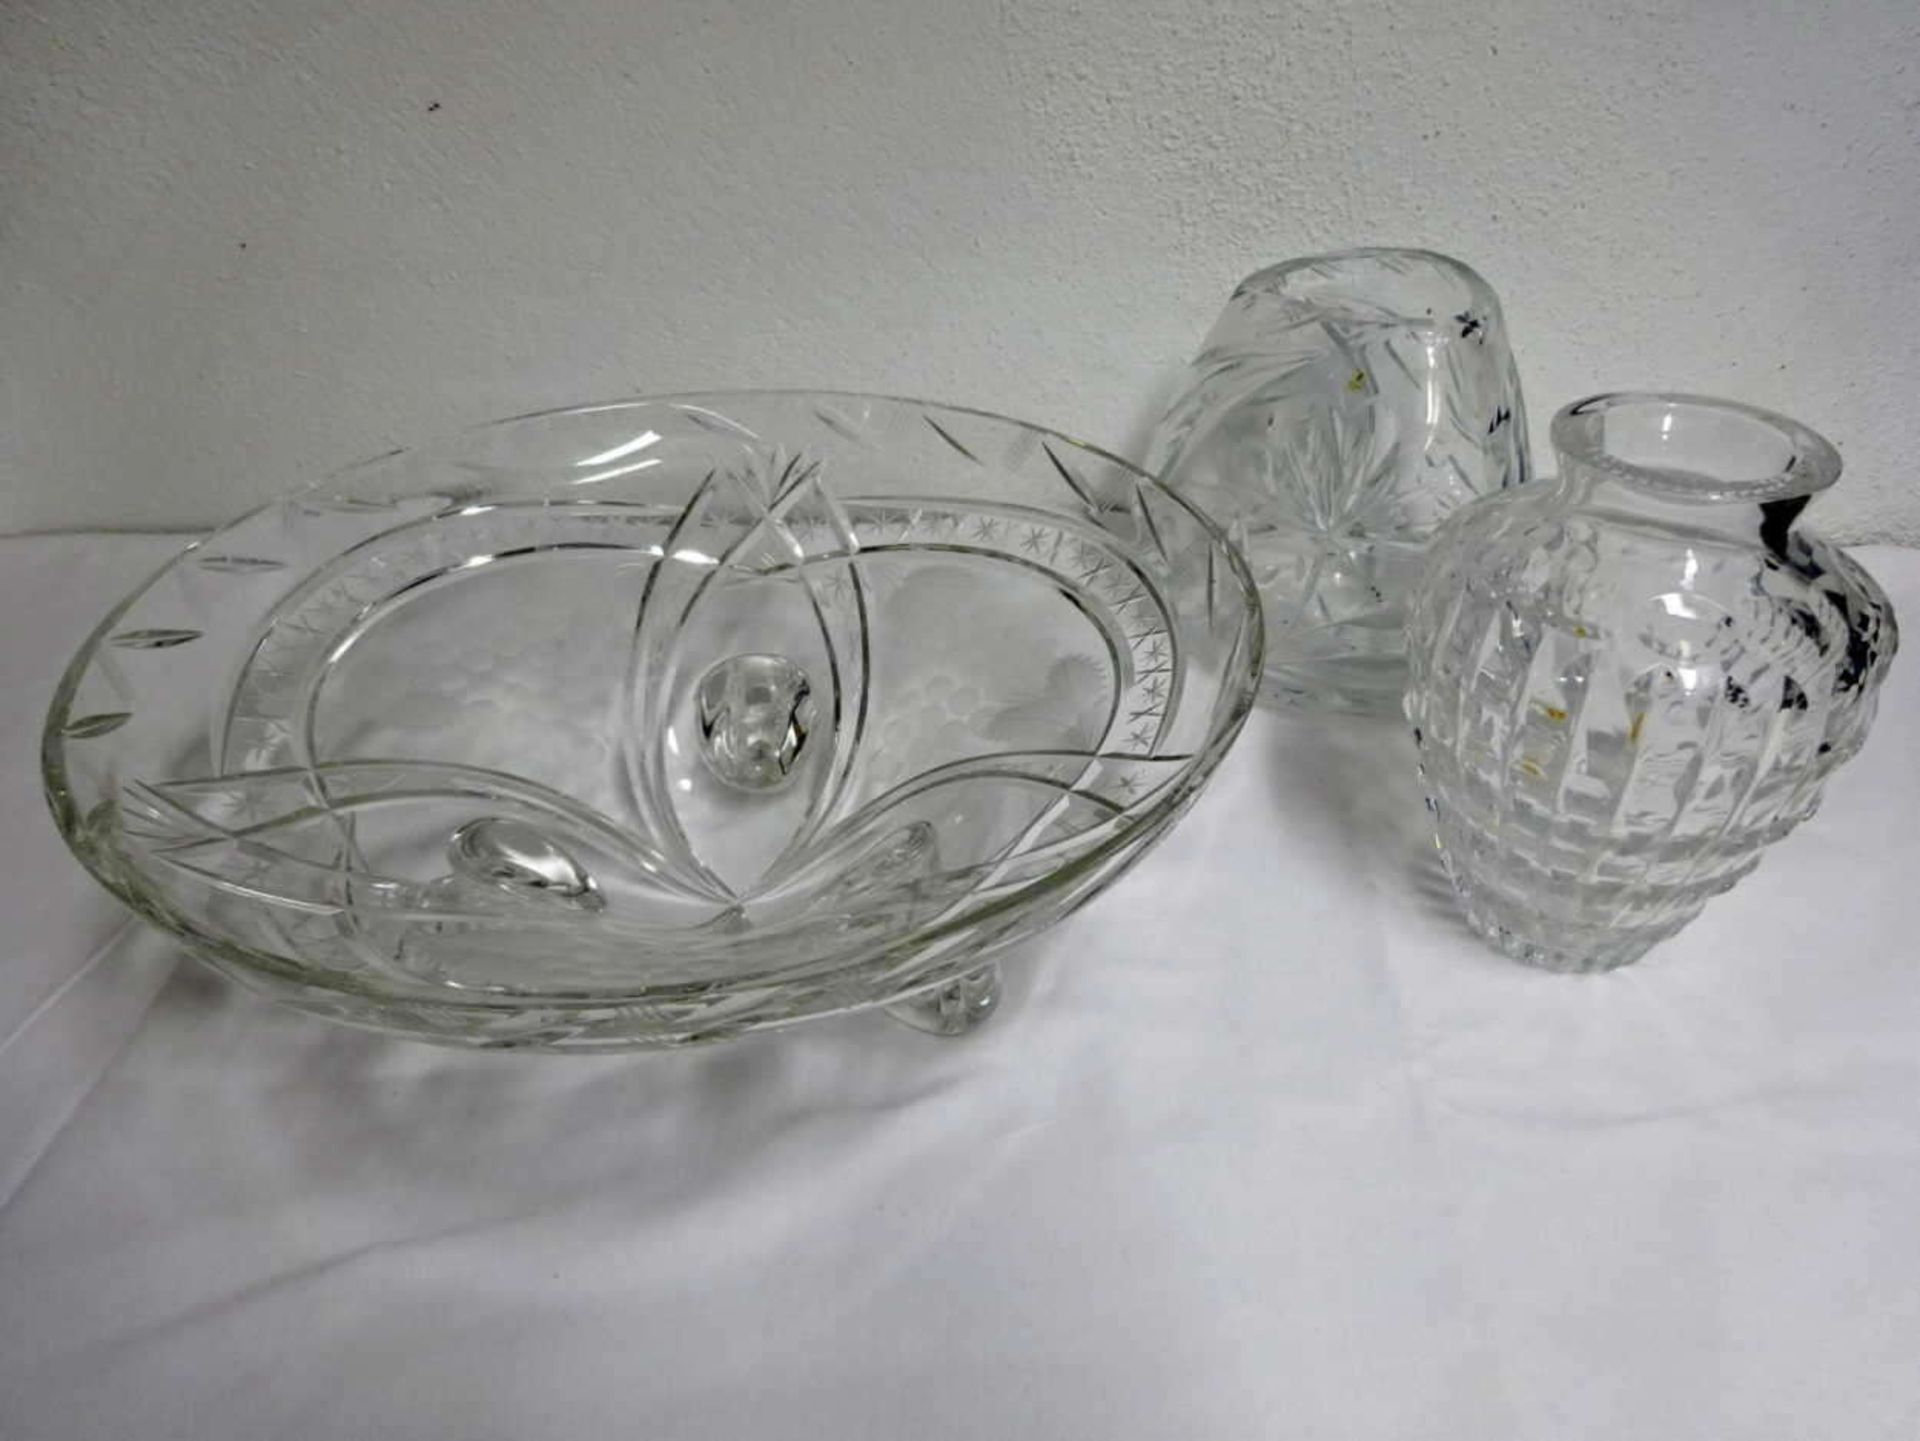 Konvolut aus Kristallglas, bestehend aus 2 Vasen, sowie 1 großen Schale, diese Durchmesser ca. 30